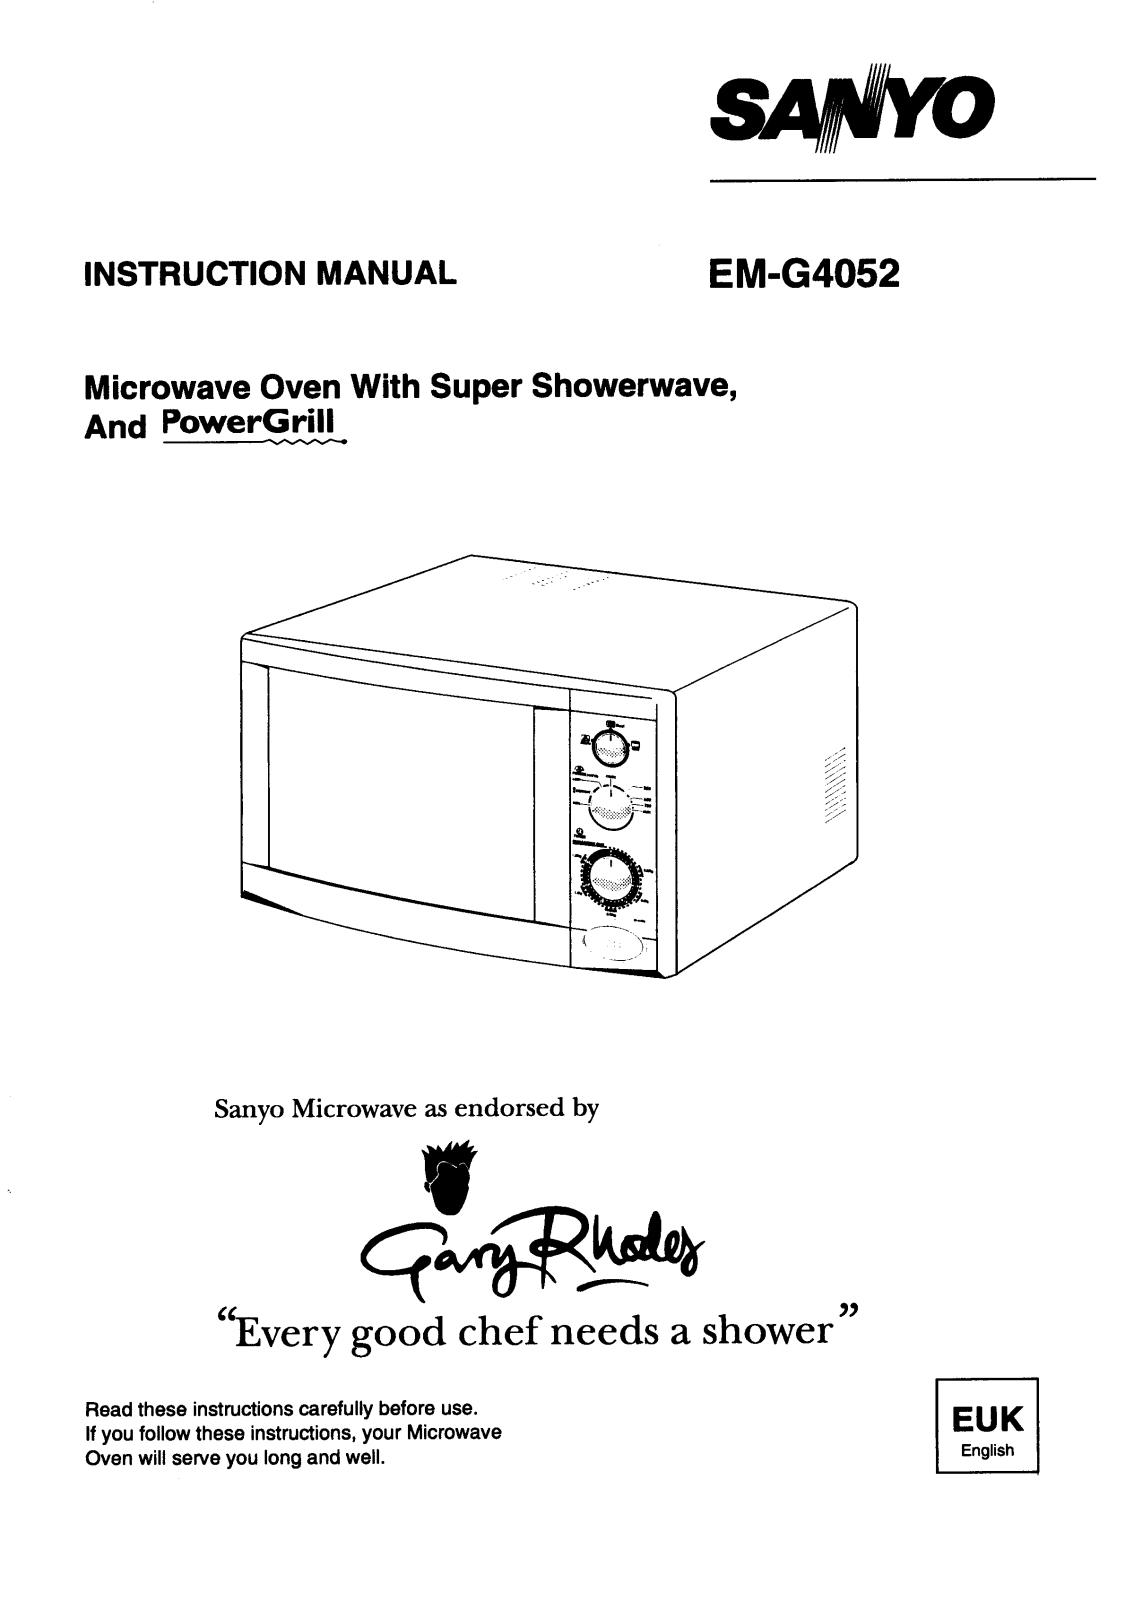 Sanyo EM-G4052 Instruction Manual